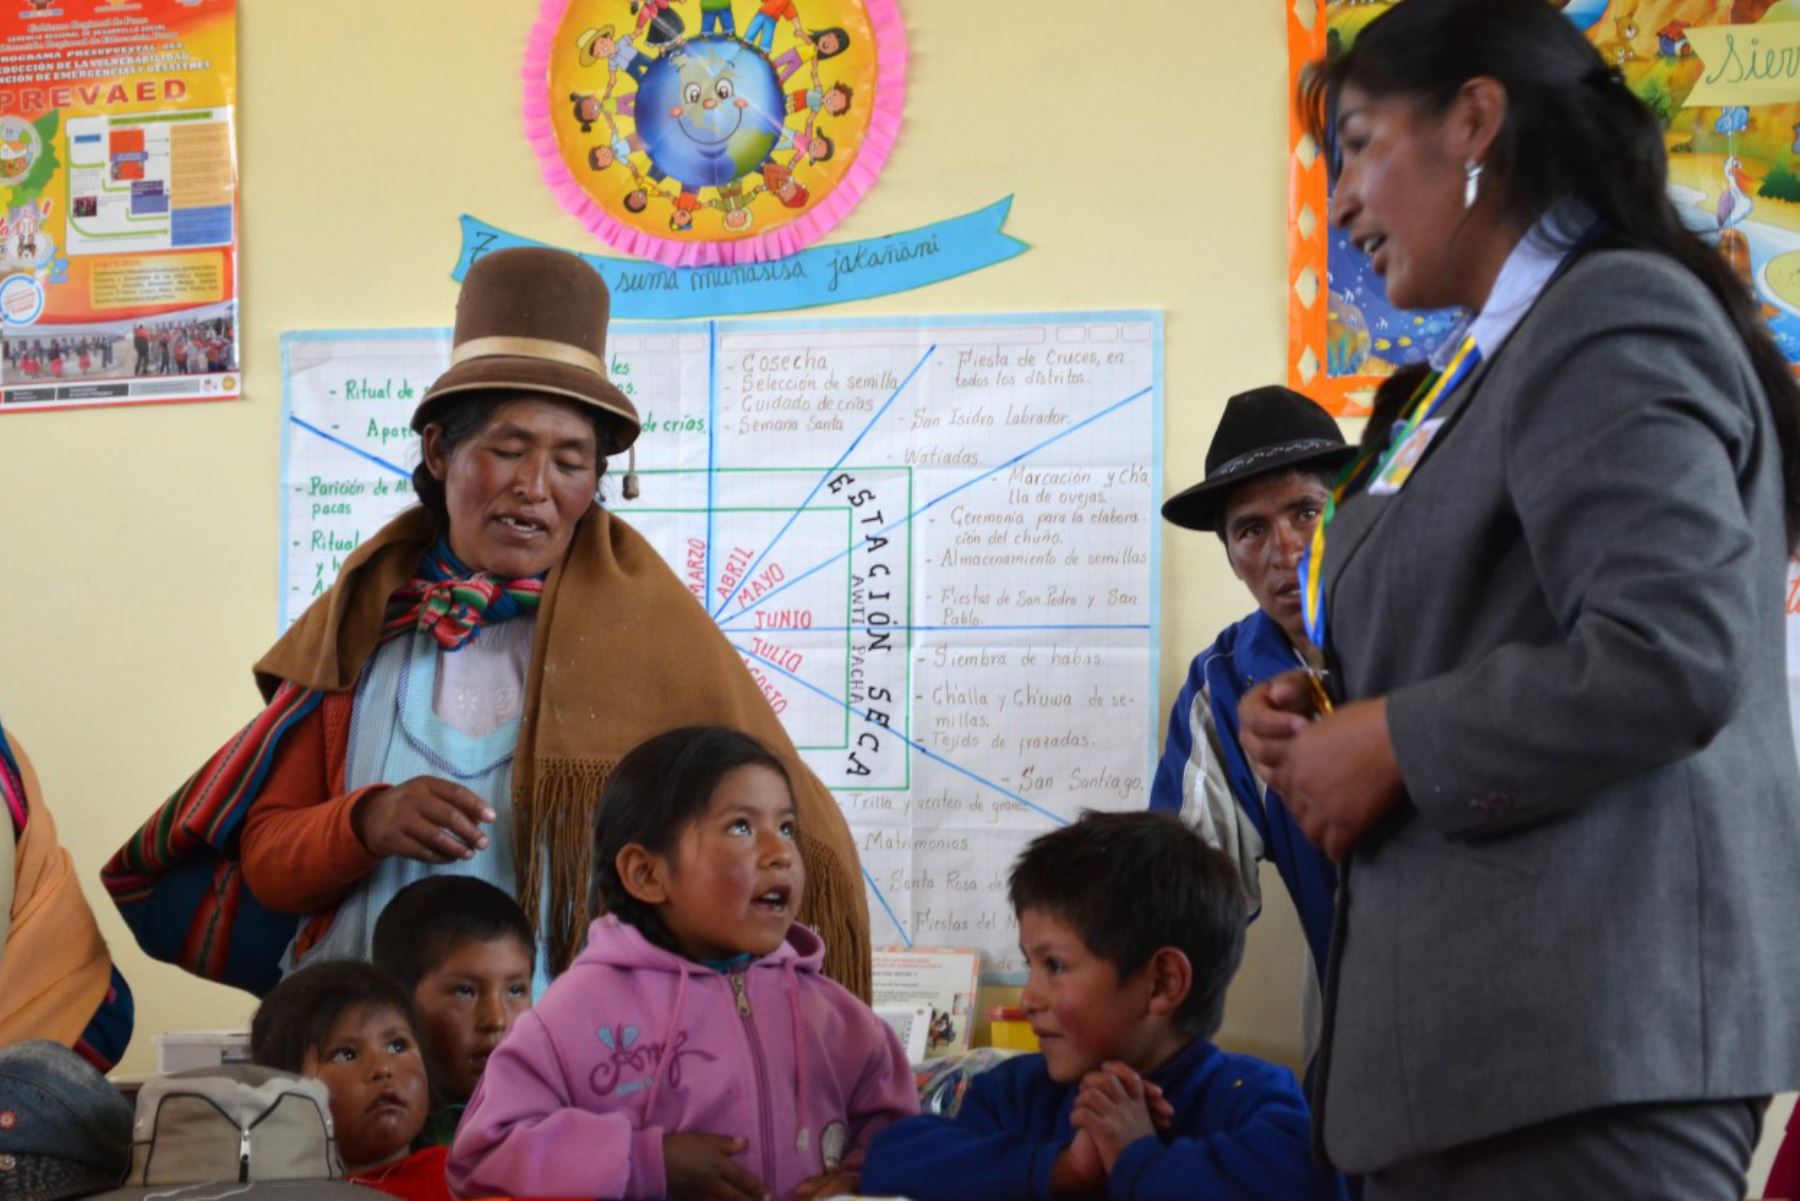 El Perú tiene actualmente 26,862 instituciones de Educación Intercultural Bilingüe (EIB) donde estudian 1 millón 239,389 niños, adolescentes y jóvenes que hablan una de las 48 lenguas originarias que registra nuestro país.